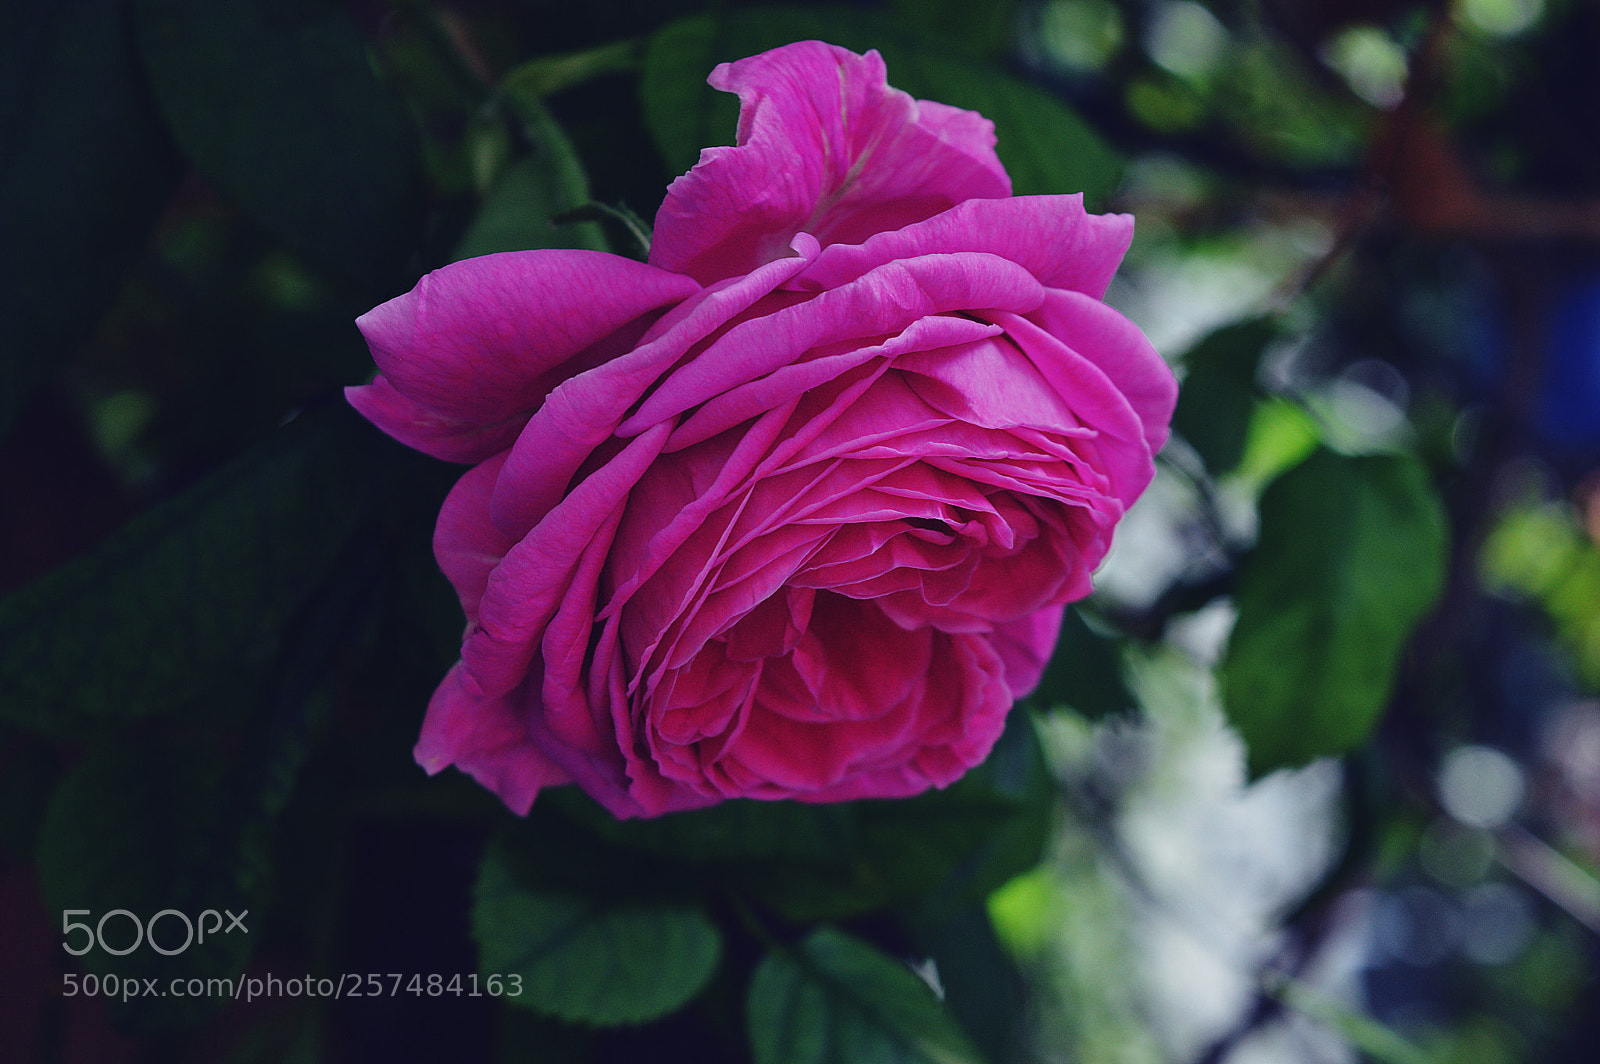 Nikon D3200 sample photo. Garden rose photography